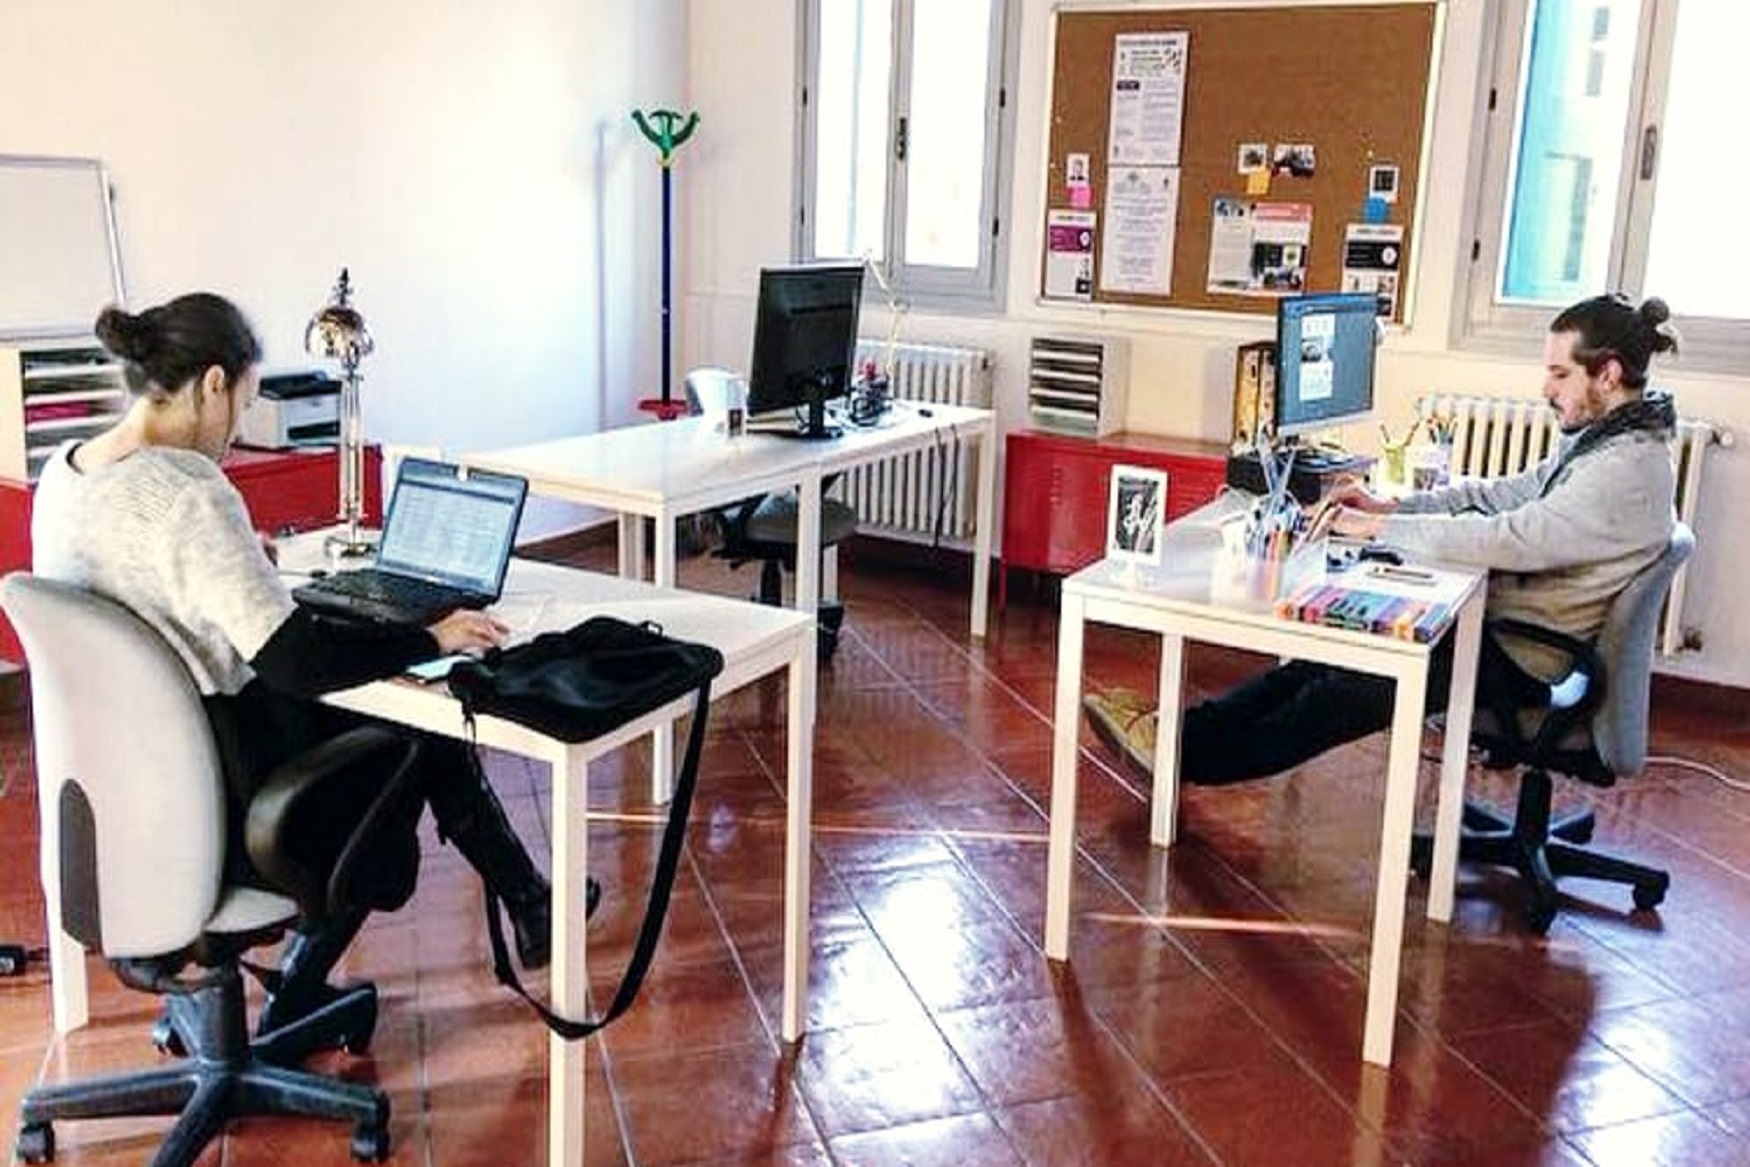 Formigine: Hub in Villa, postazioni di coworking gratuite per progetti innovativi